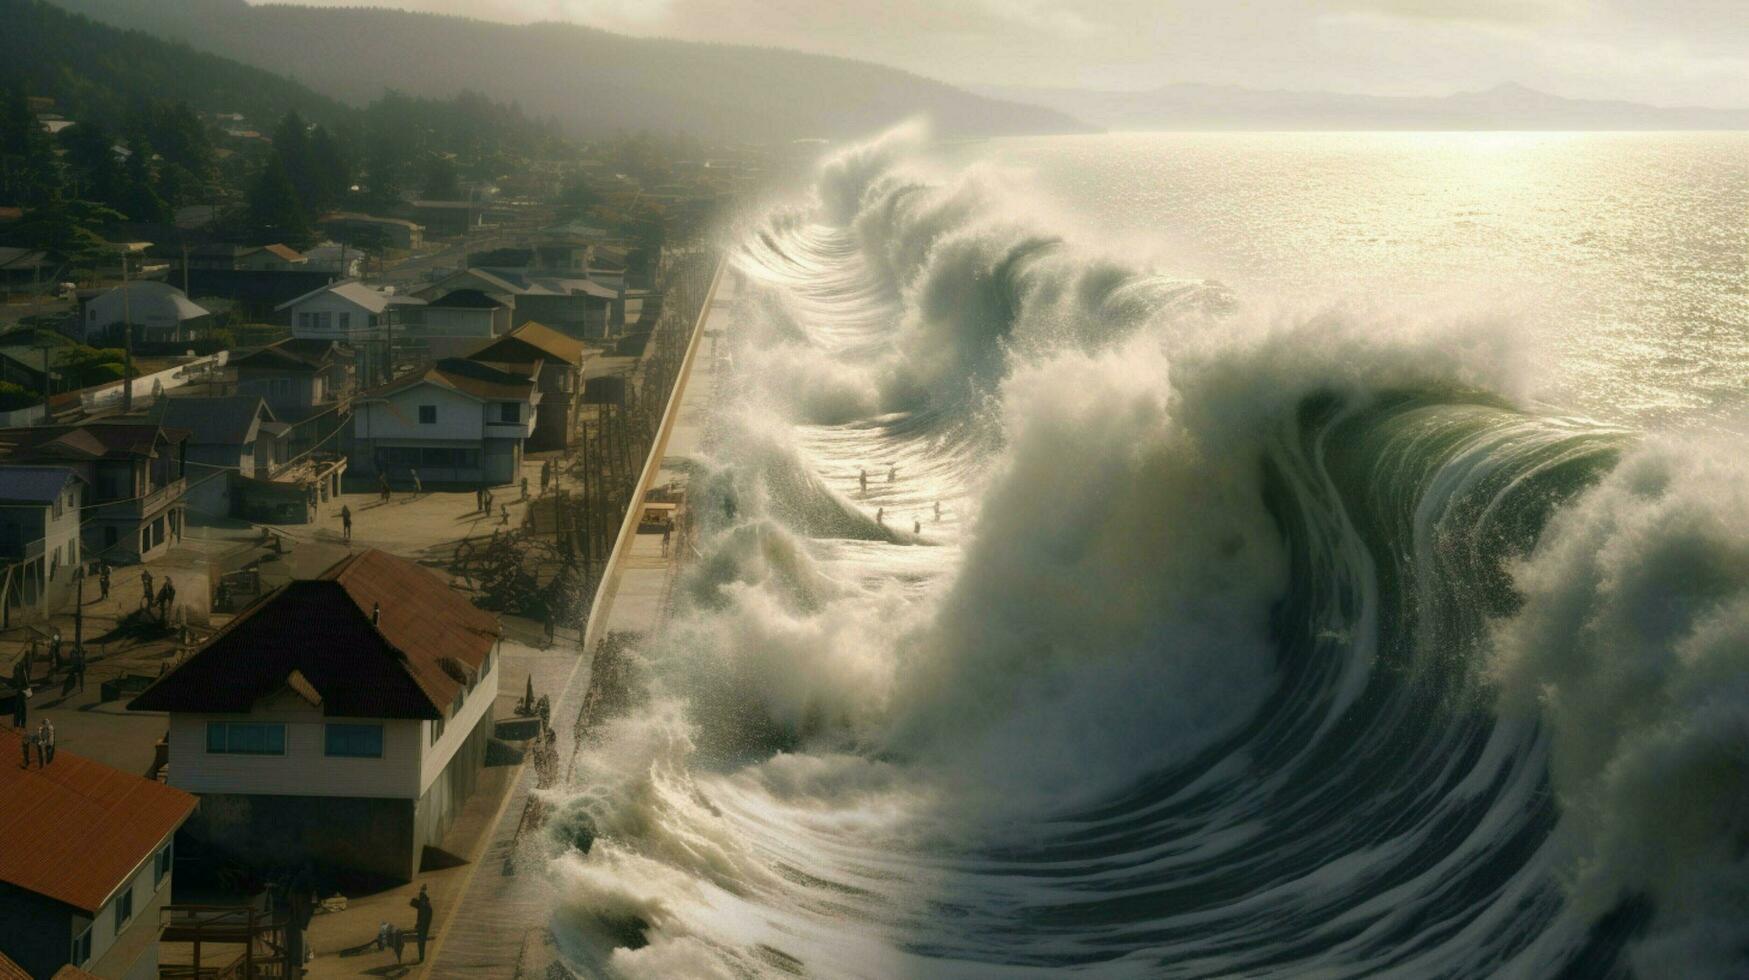 tsunami vågor kraschar över sjöväggar och vallar i foto